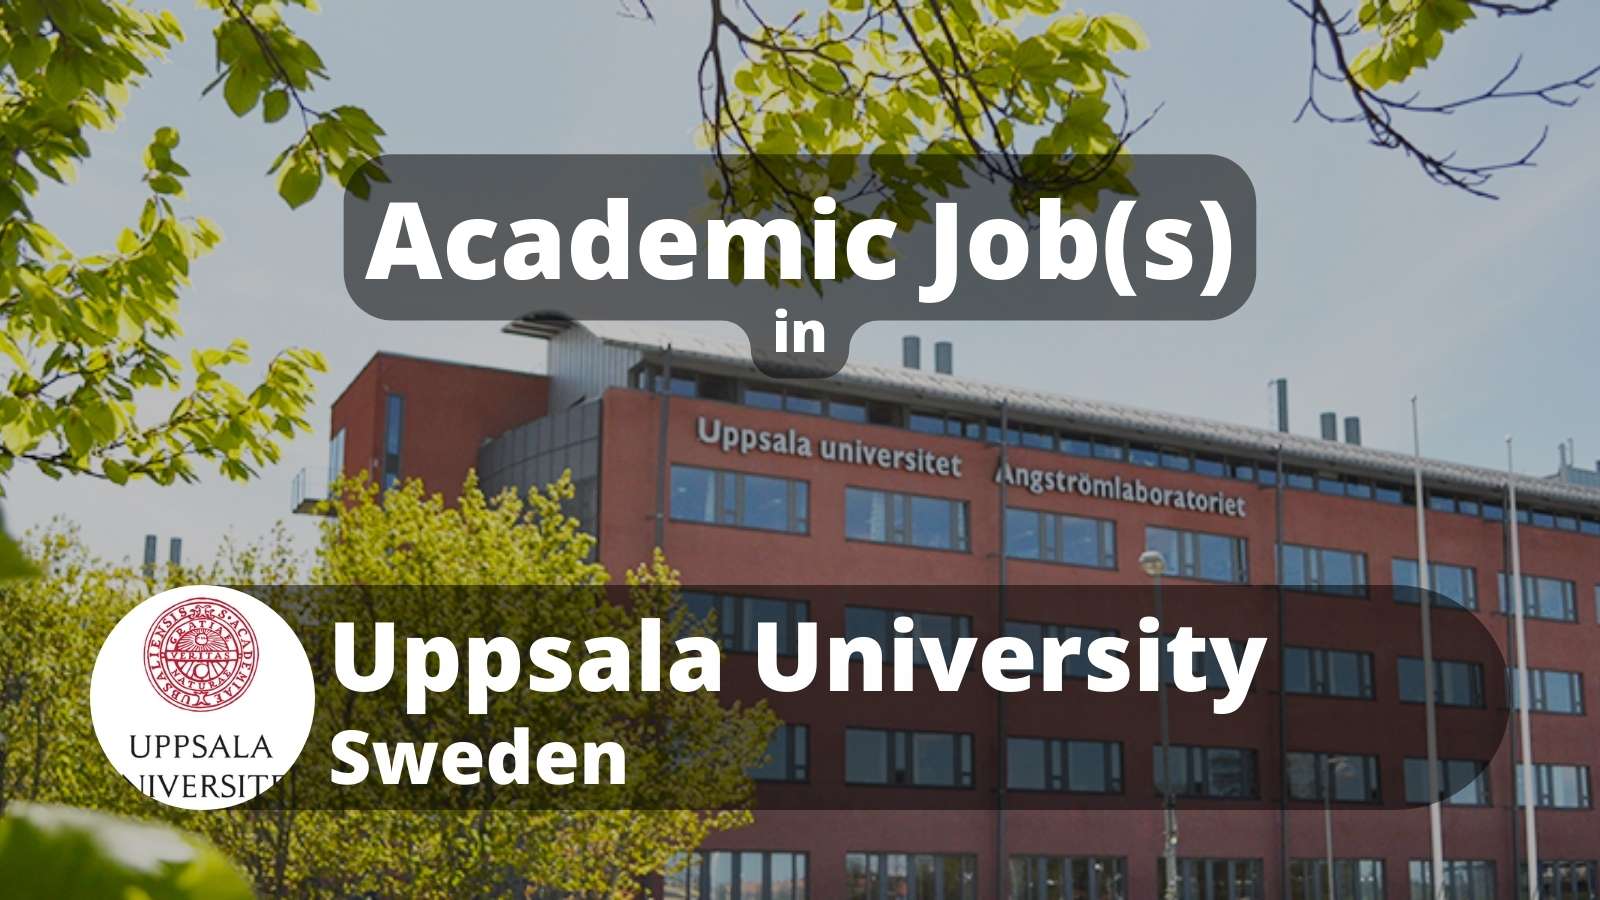 Academic Jobs in Uppsala University Sweden